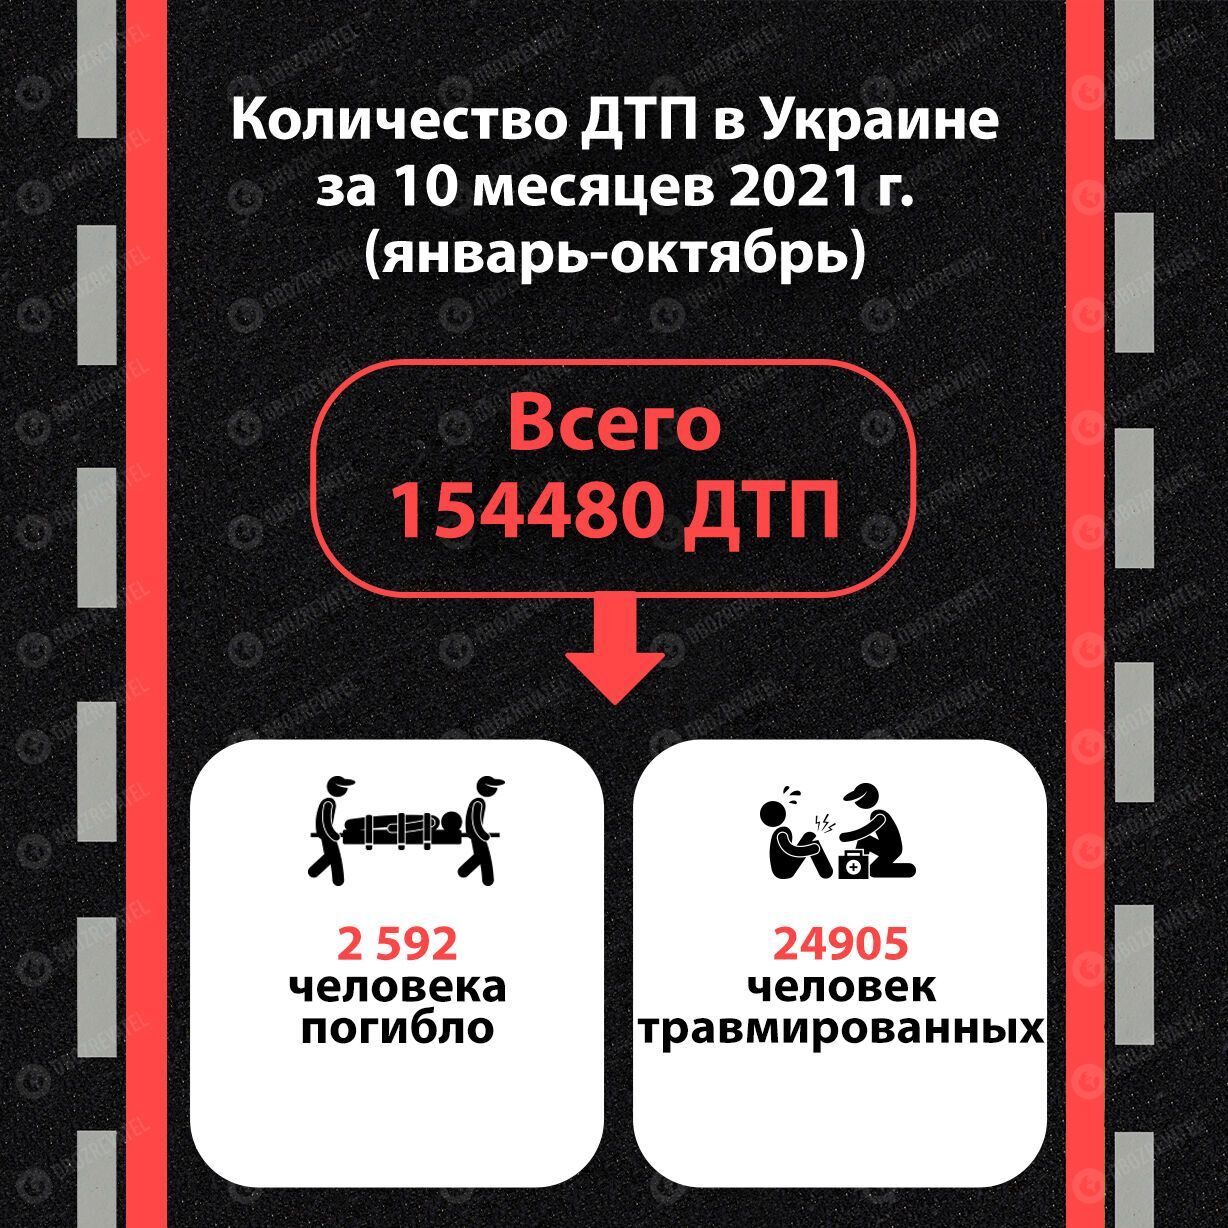 Статистика ДТП в Украине.